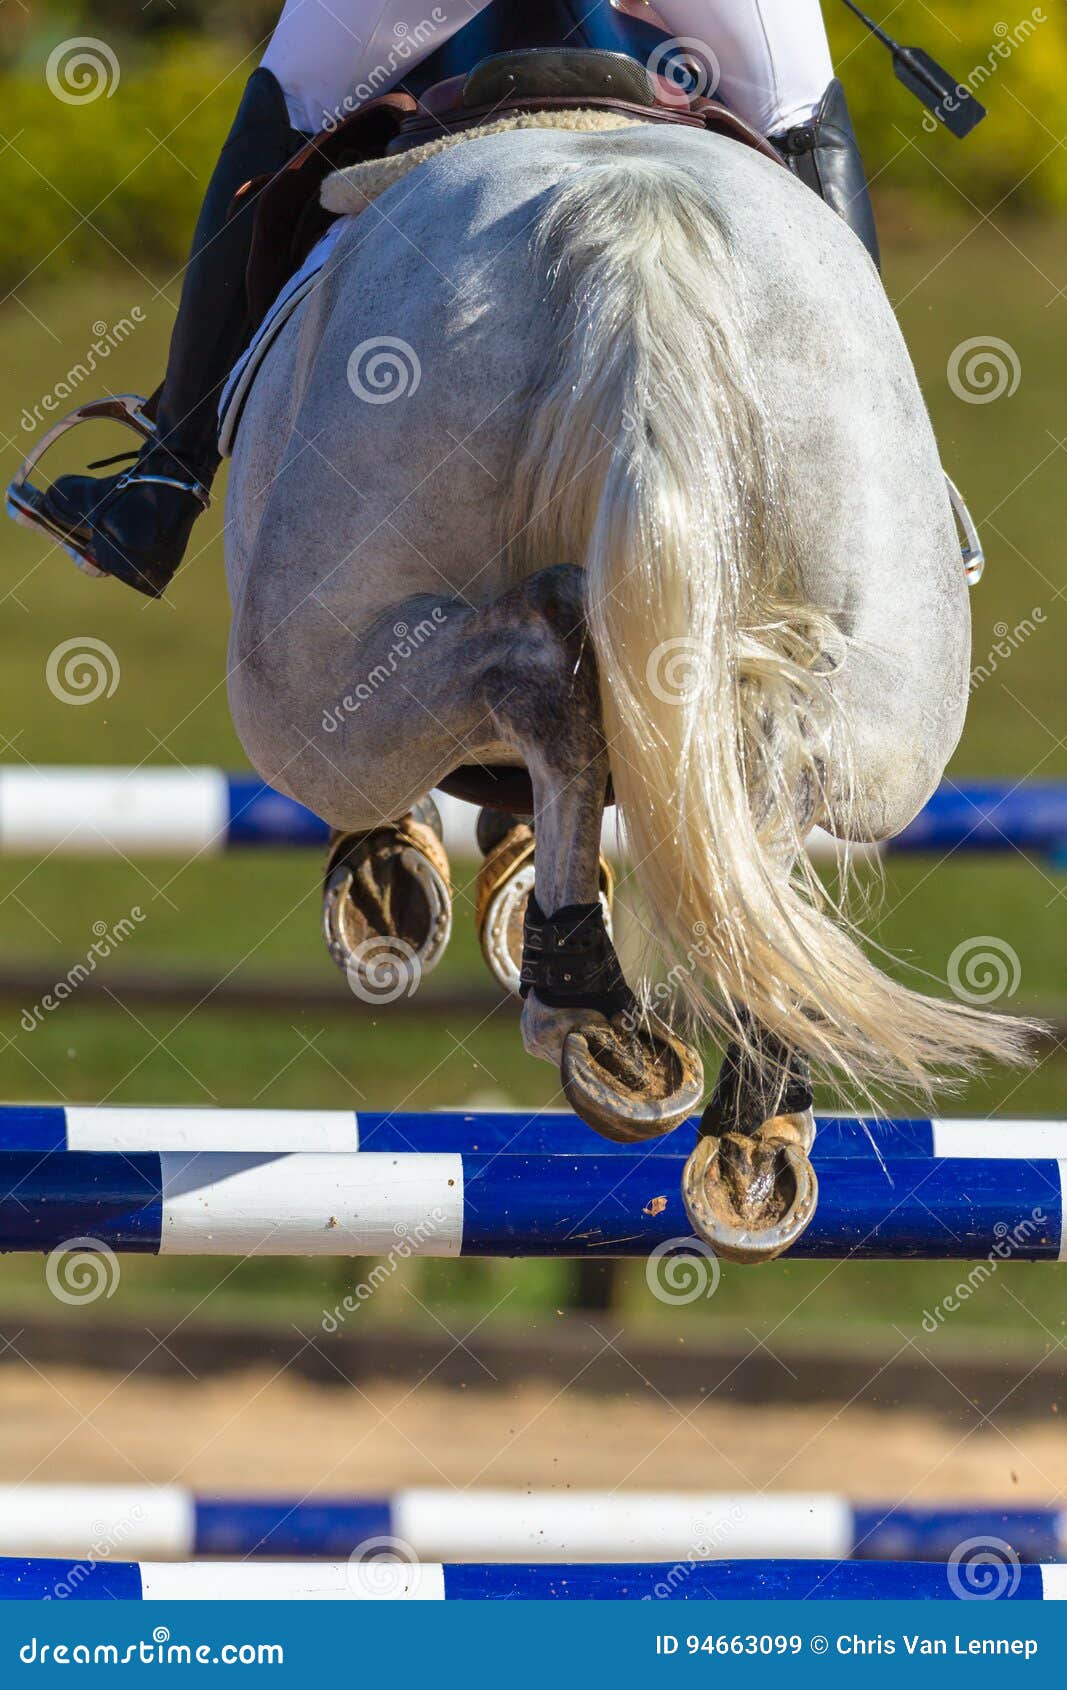 rider horse jumping closeup rear hoofs